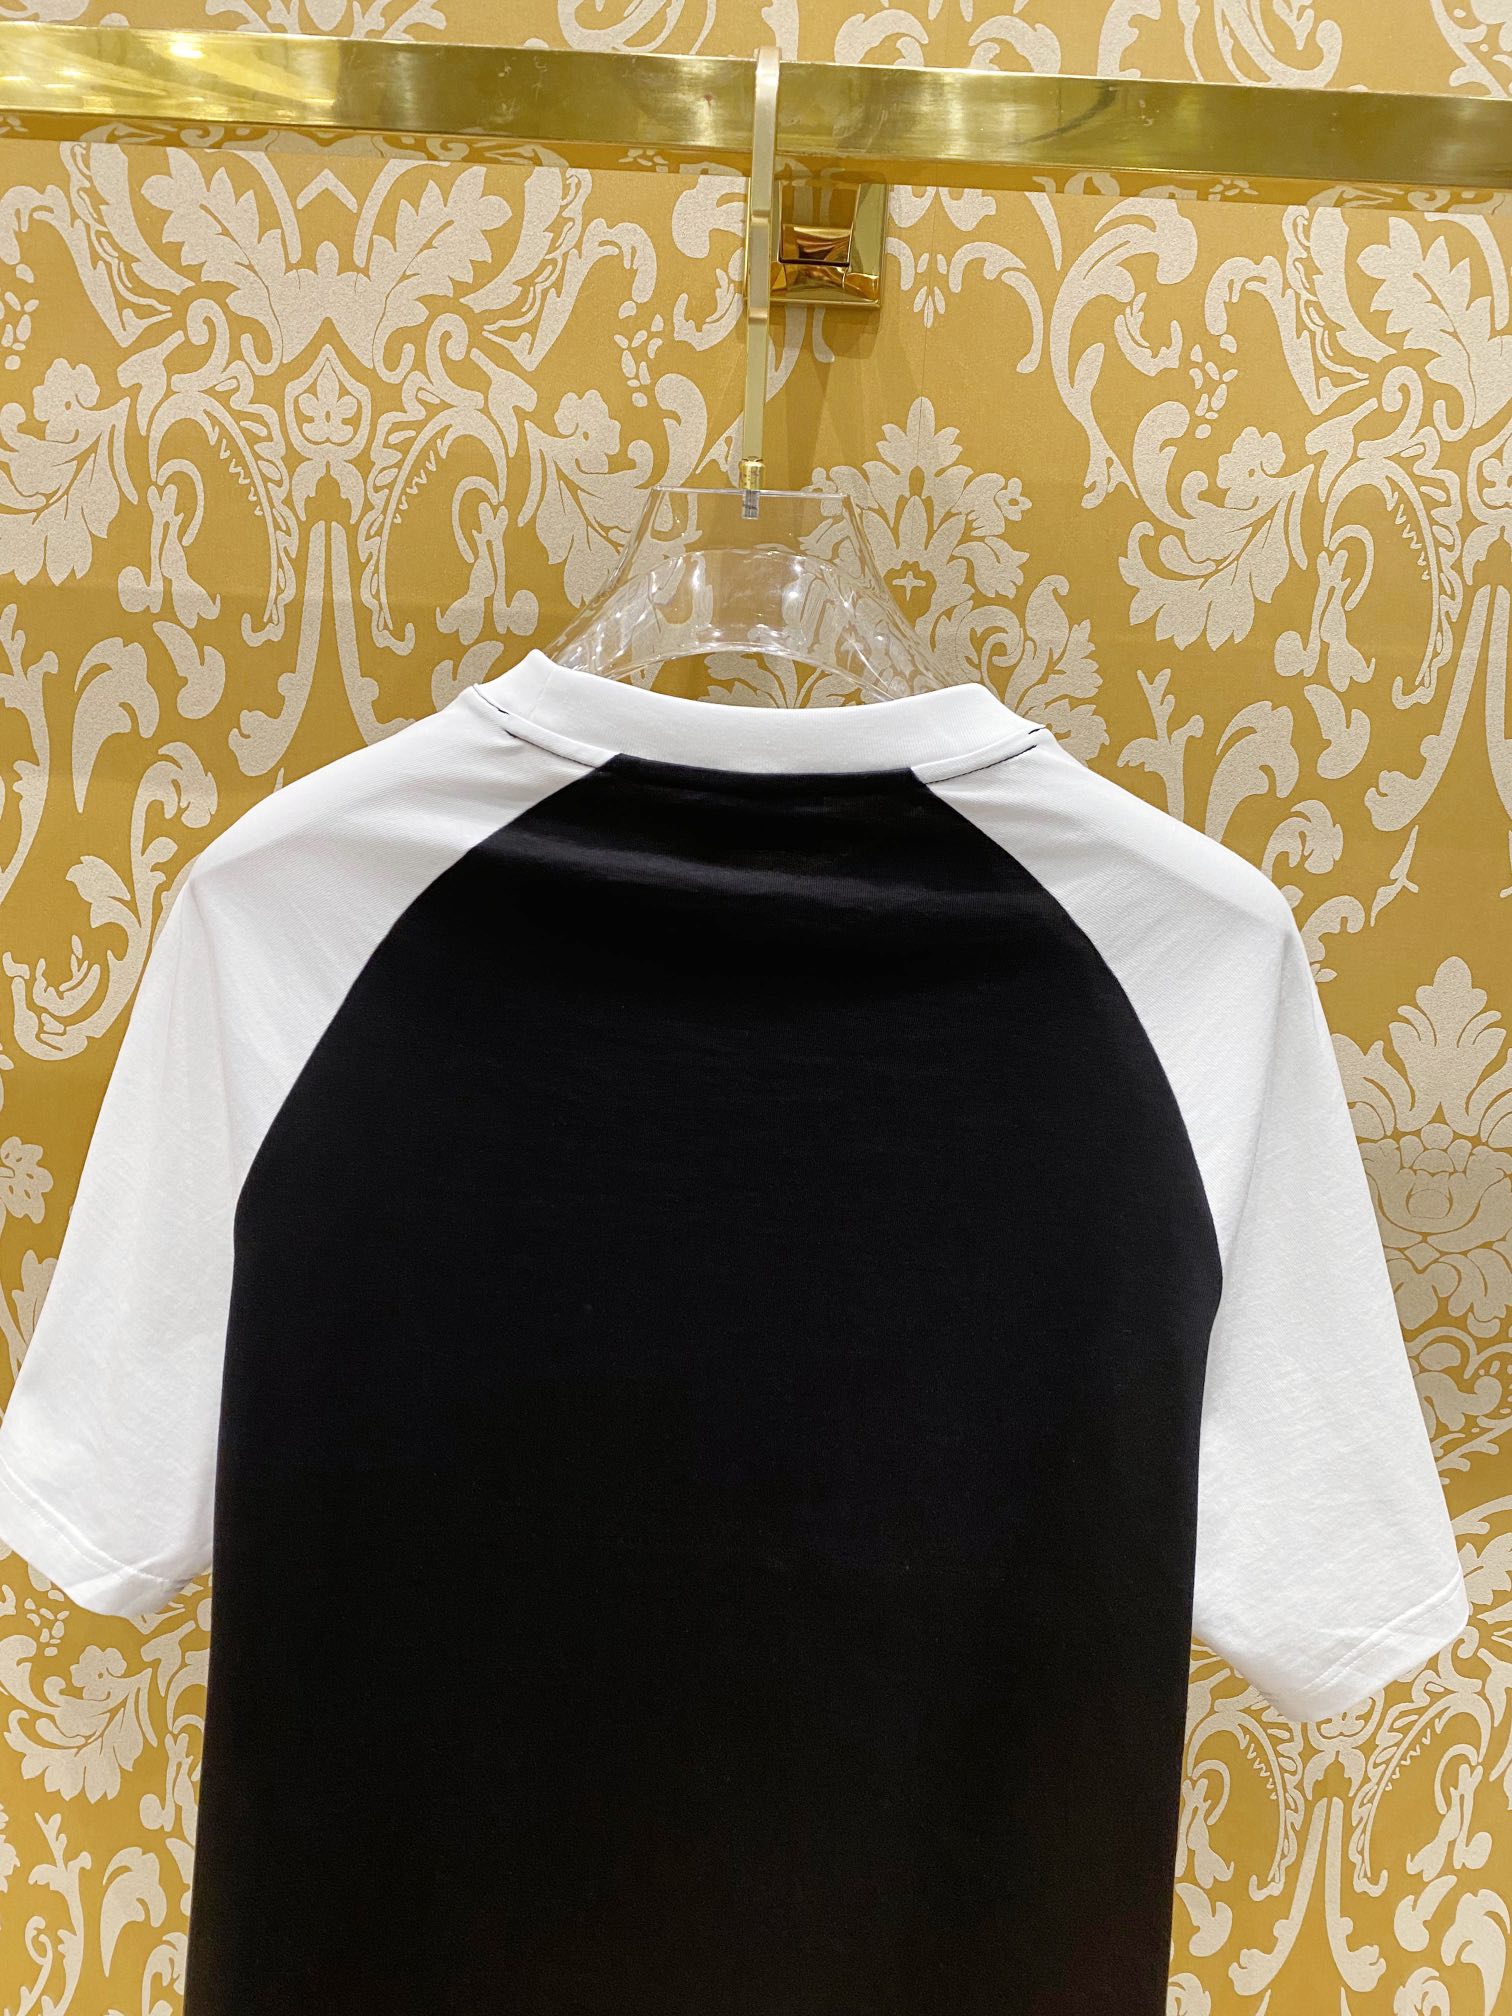 人気新作アイテム chanel の t シャツ偽物 純綿 トップス 半袖 ゆったり 柔らかい ロゴプリント ブラック_6